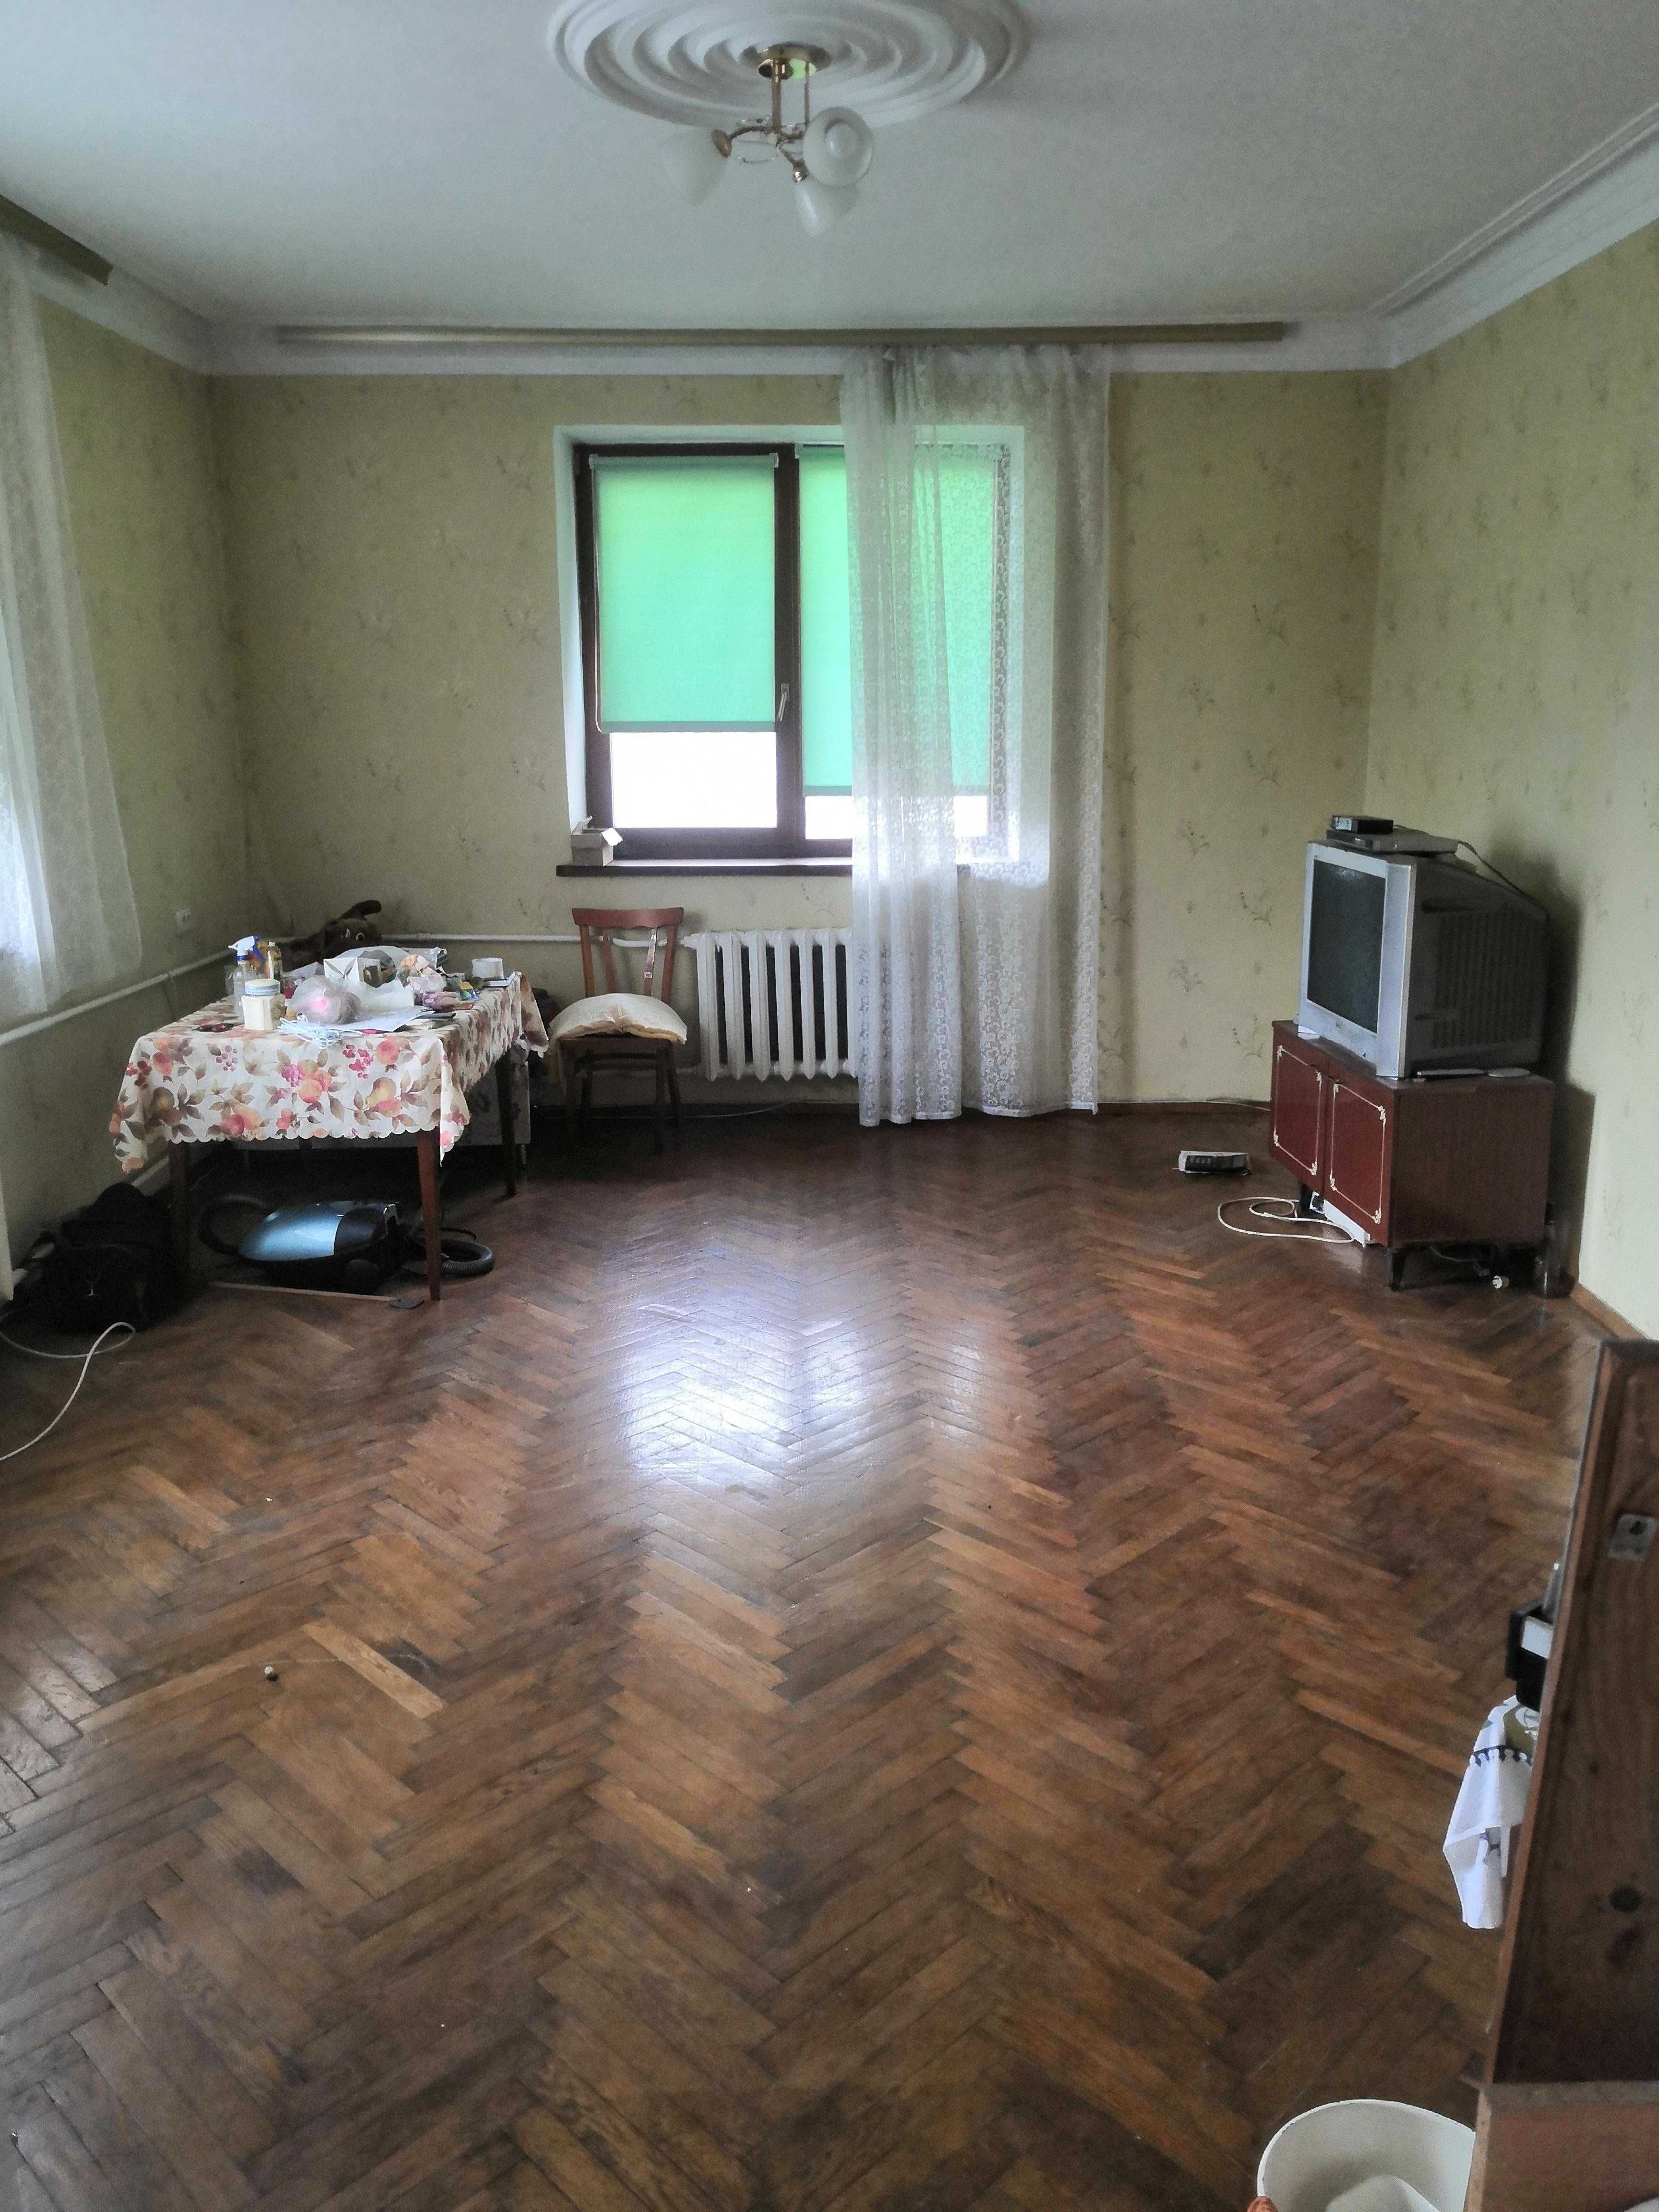 Продажа дома в Коростышеве 167 квм, 9 соток. 2 этажа. Большой гараж.